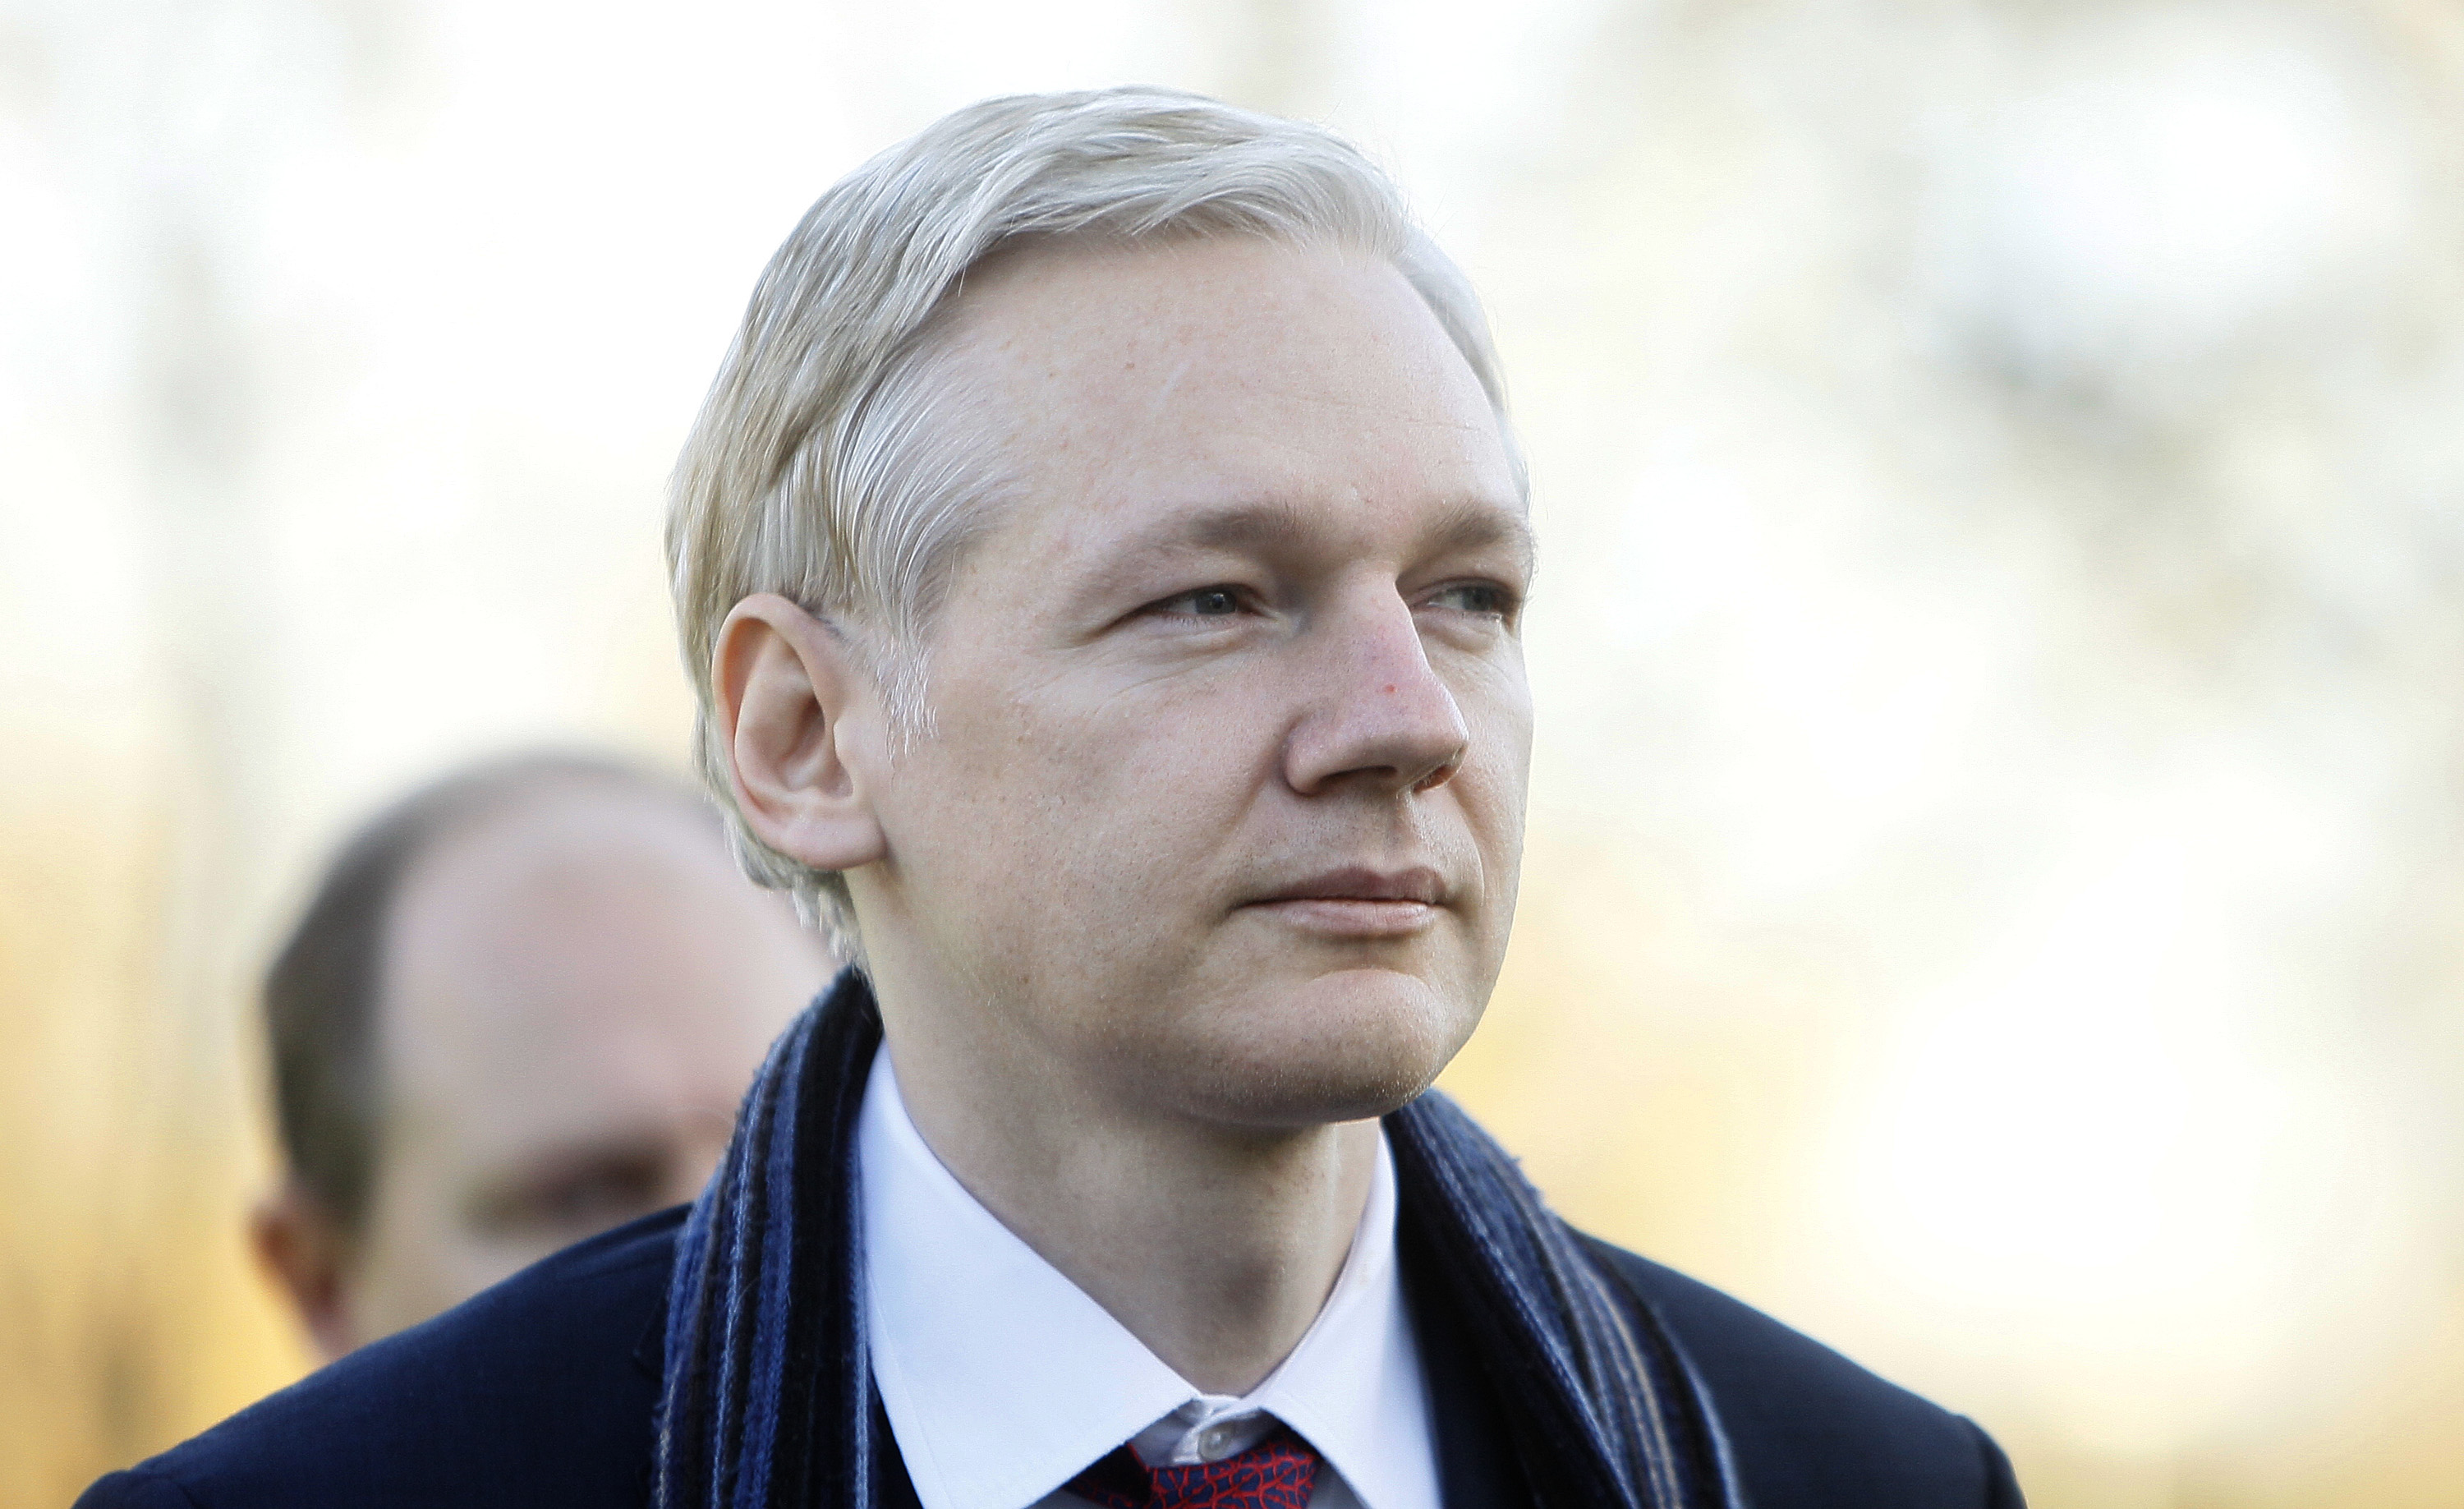 Julian Assange fastnade i trafiken på vägen till domstolen under onsdagen och kunde därför inte närvara.